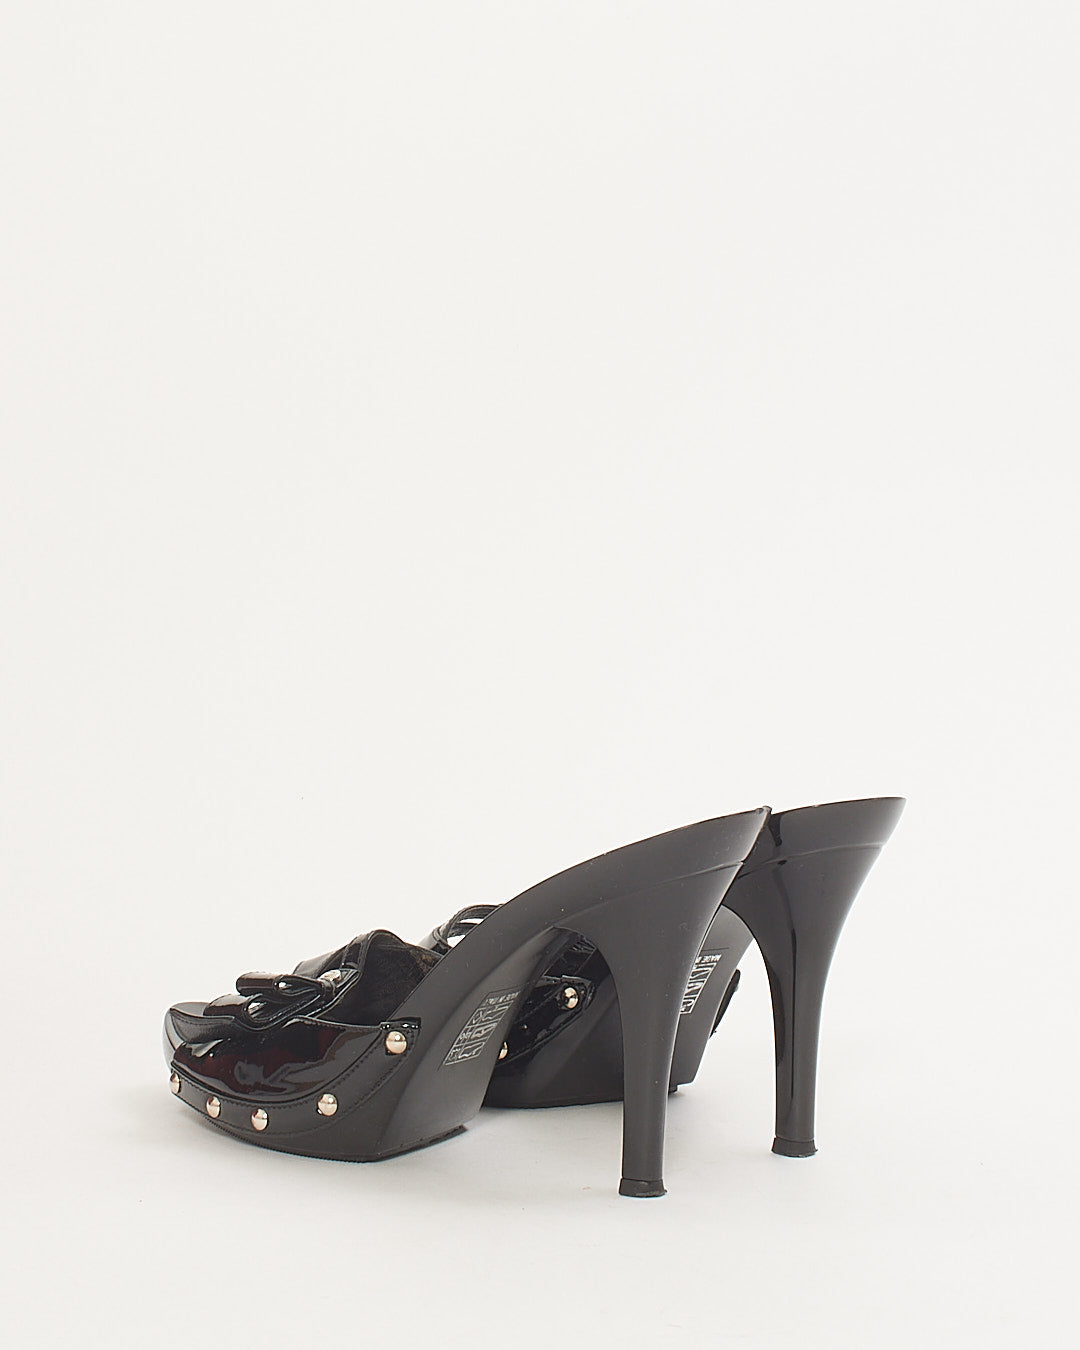 Sandales à talons avec nœud en cuir verni noir Dior - 38,5